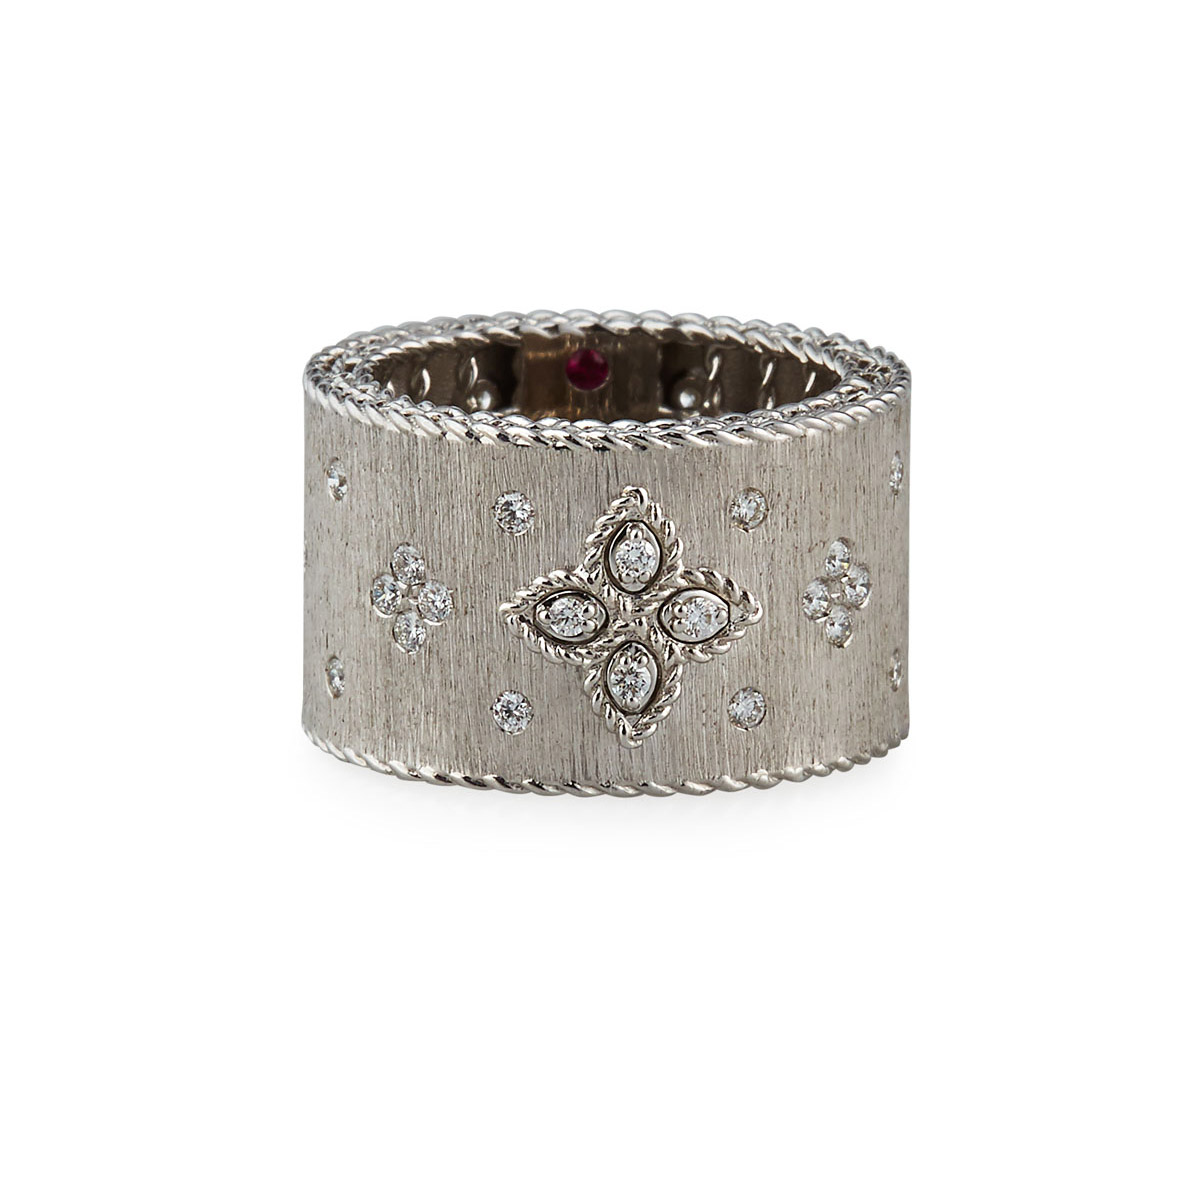 Produttore OEM di gioielli OEM / ODM personalizzati all'ingrosso in oro bianco 18 carati, argento e anelli di diamanti